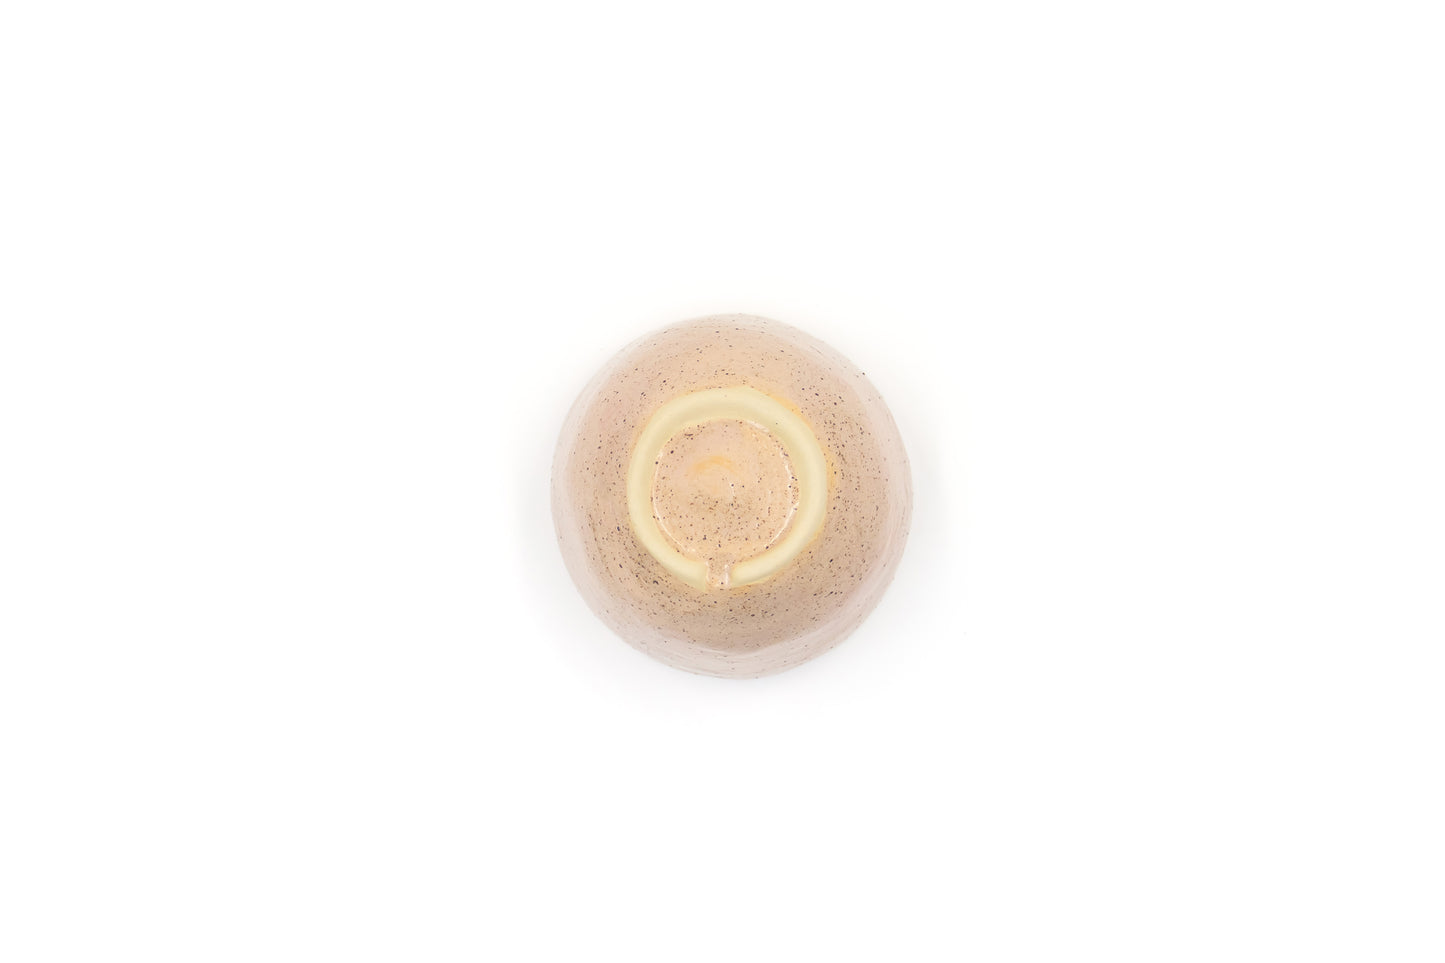 Miseczka ceramiczna w kolorze beżowym z kropkami